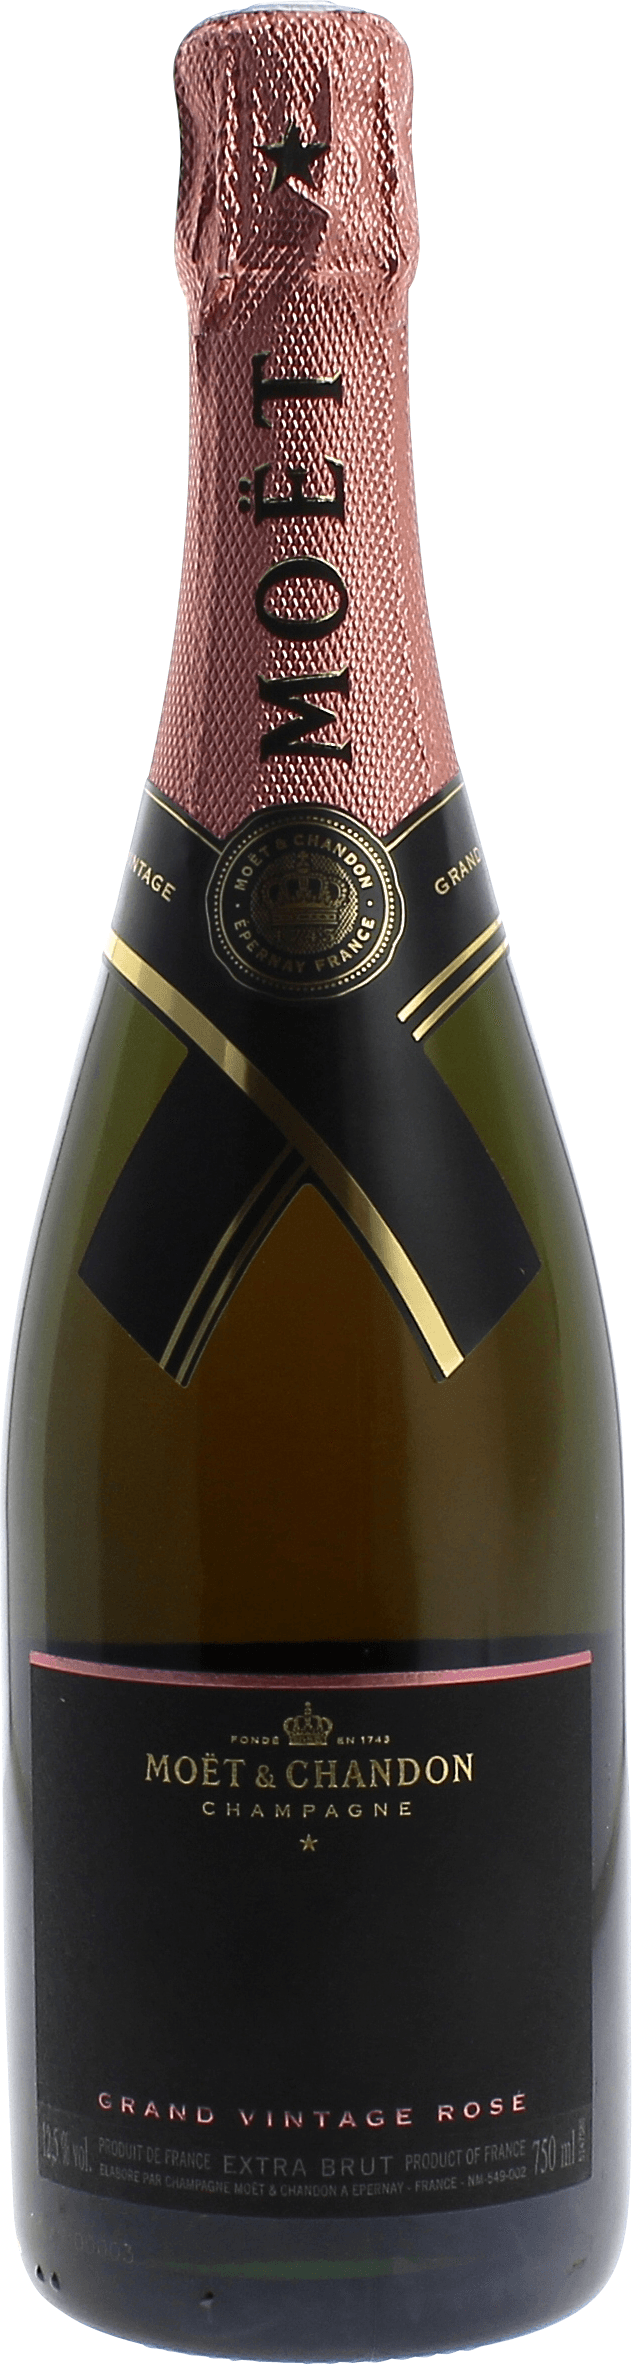 Mot et chandon grand vintage ros 2012  Moet et chandon, Champagne